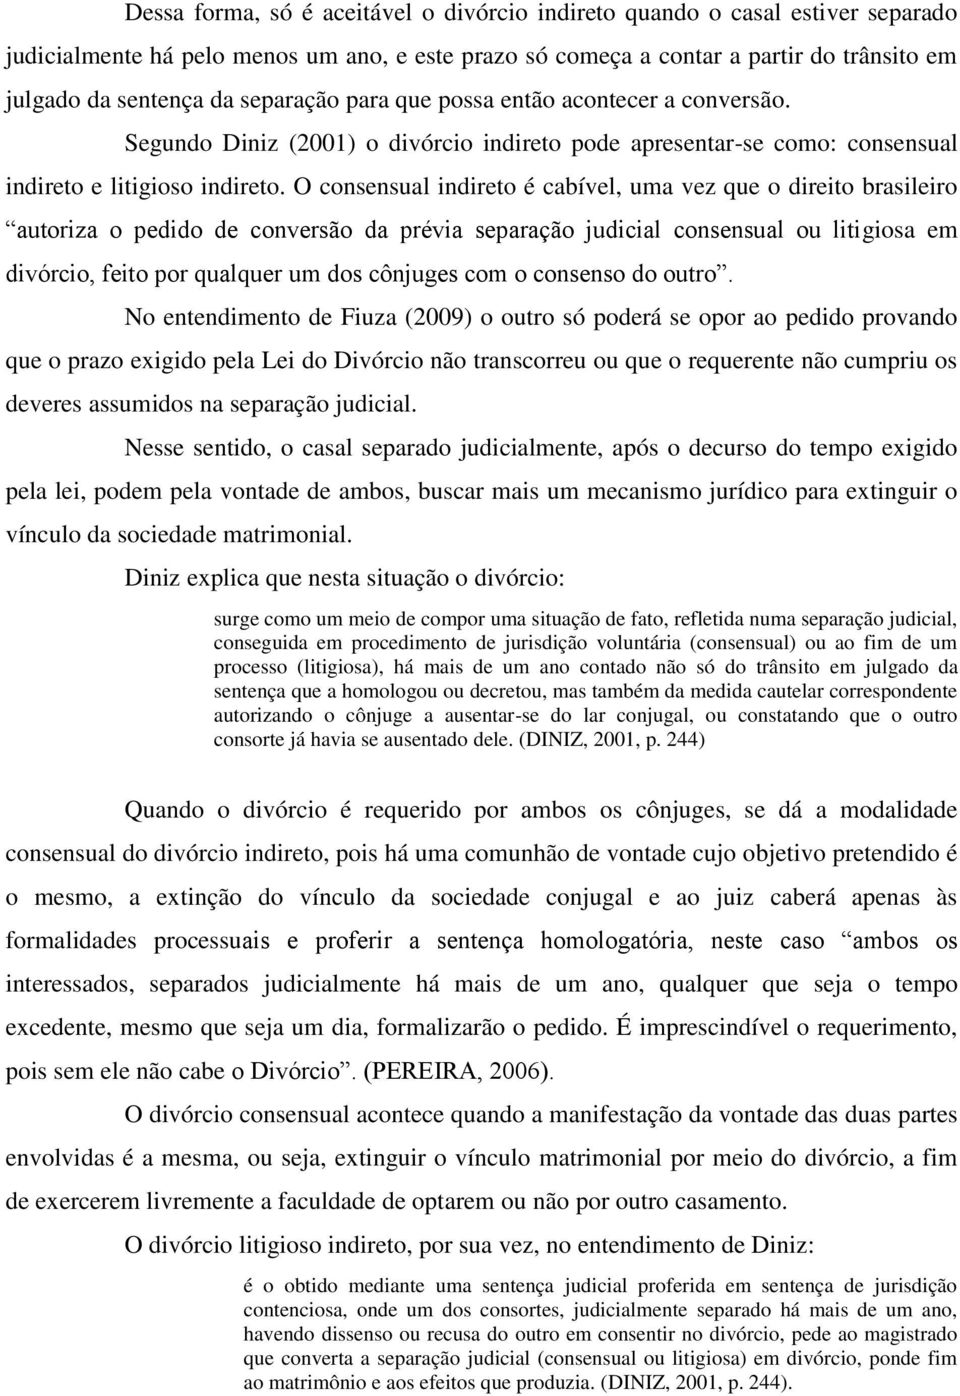 O consensual indireto é cabível, uma vez que o direito brasileiro autoriza o pedido de conversão da prévia separação judicial consensual ou litigiosa em divórcio, feito por qualquer um dos cônjuges